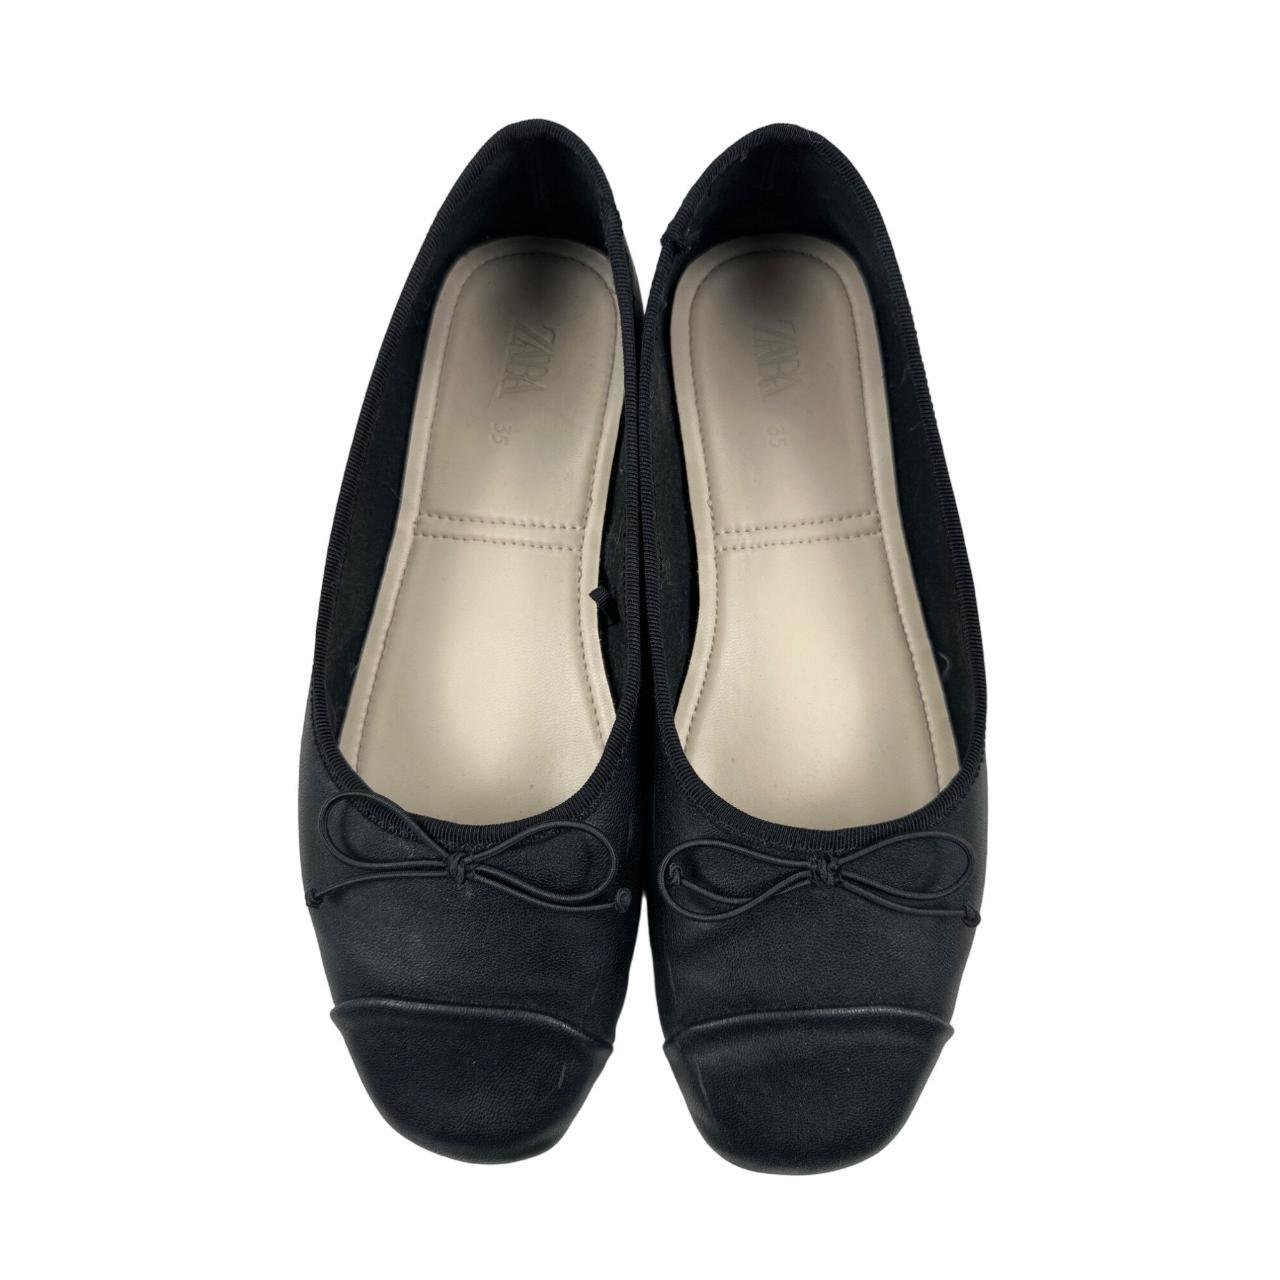 Zara Bow Ballet Flats in Black AC1123 Size : 35... - Depop